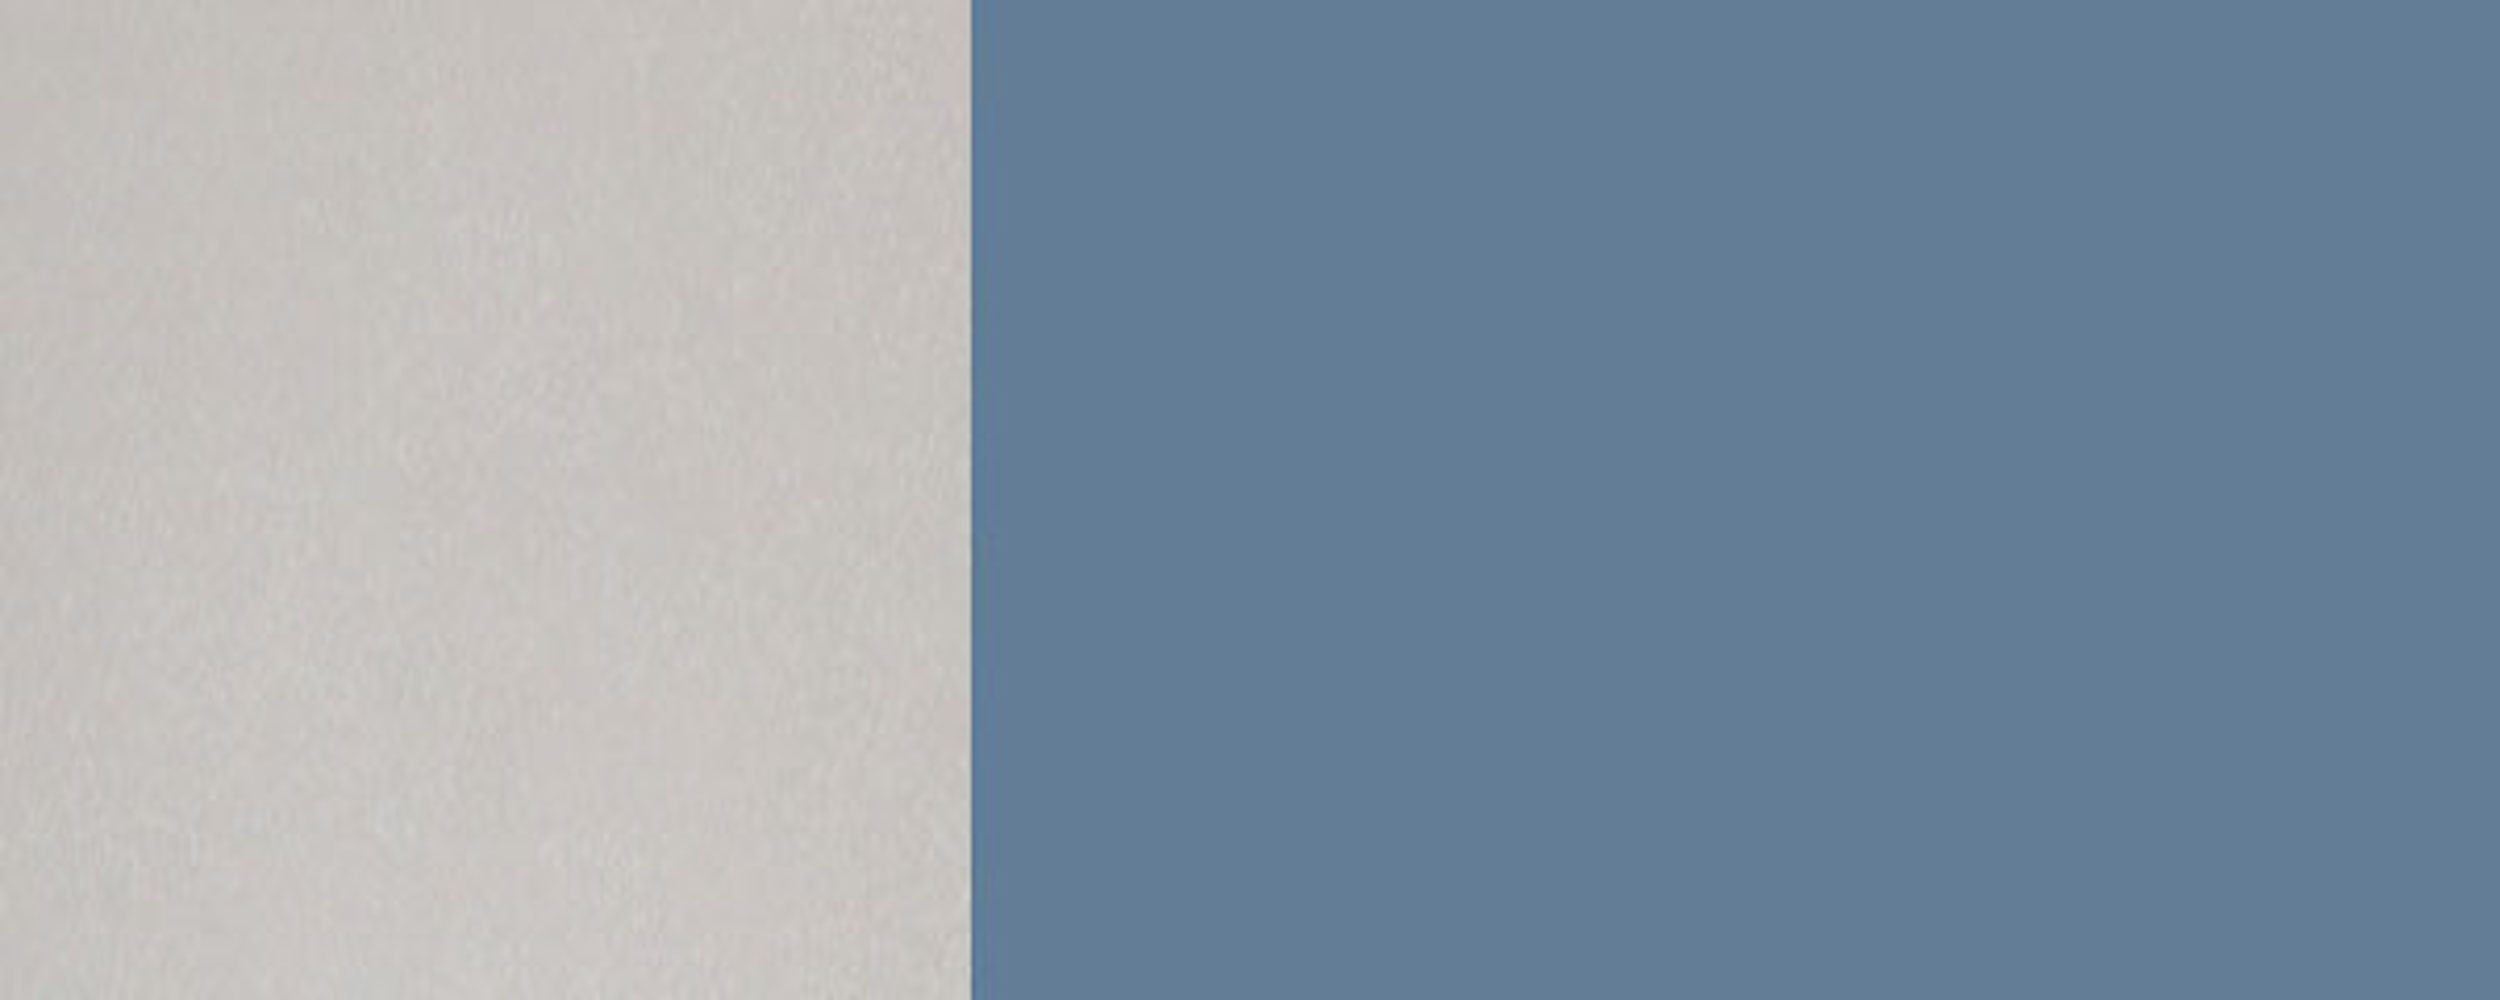 Feldmann-Wohnen Klapphängeschrank Florence taubenblau Hochglanz 5014 mit 60cm Front- grifflos wählbar RAL Korpusfarbe (Florence) und 1-türig Glaseinsatz